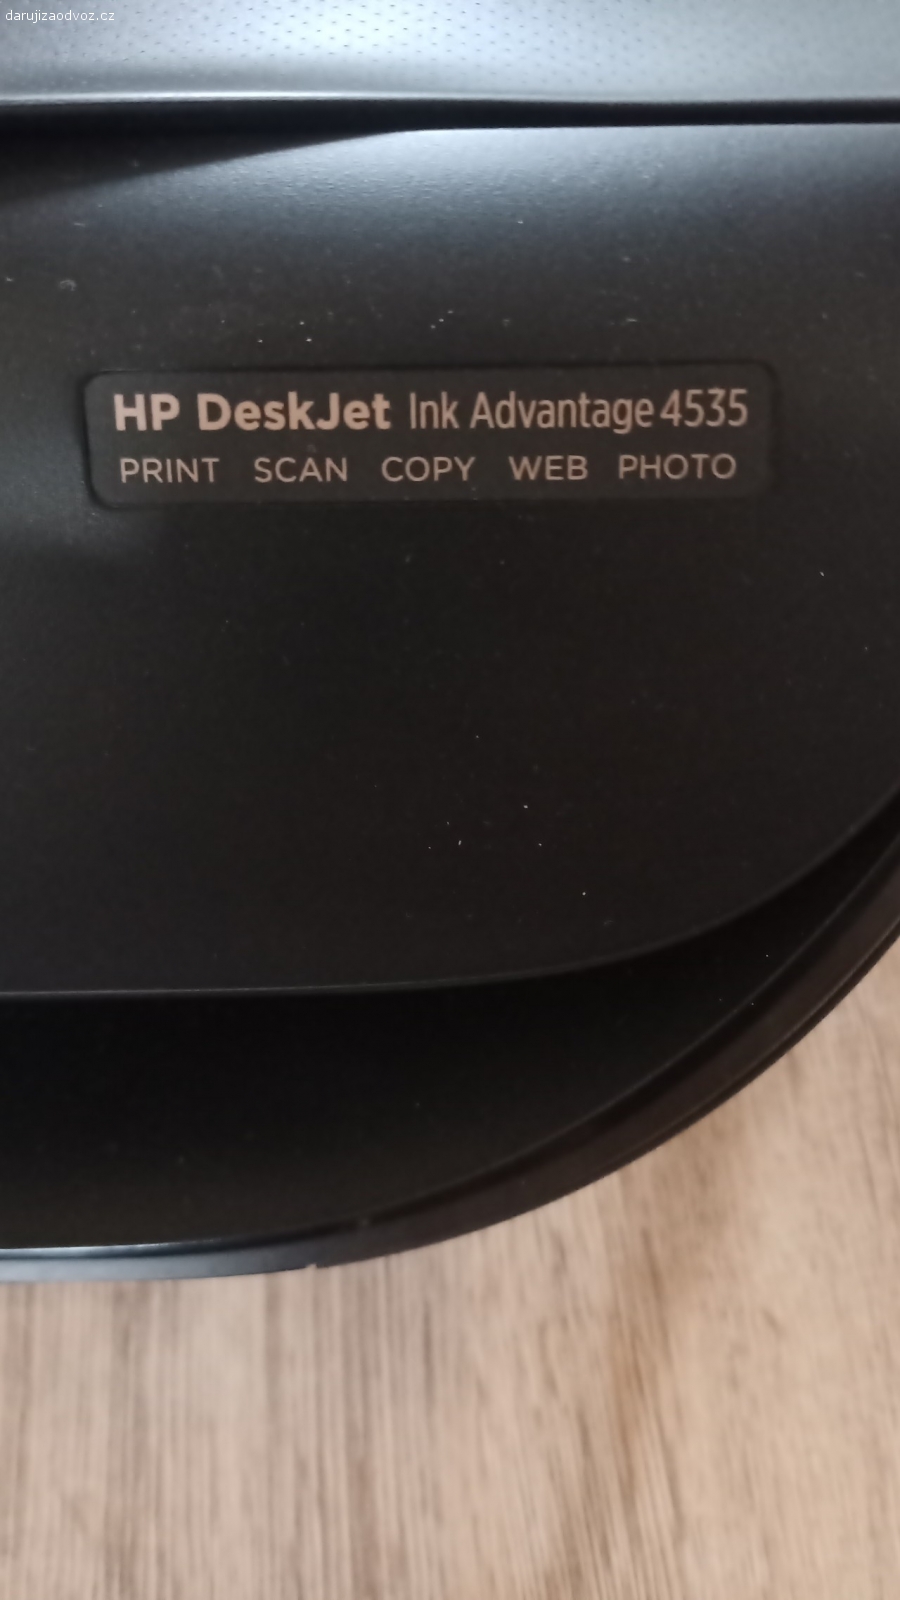 tiskarna + scaner HP DeskJet. tiskové hlavy nejsou funkční jinak scaner jede. Nezasilam.